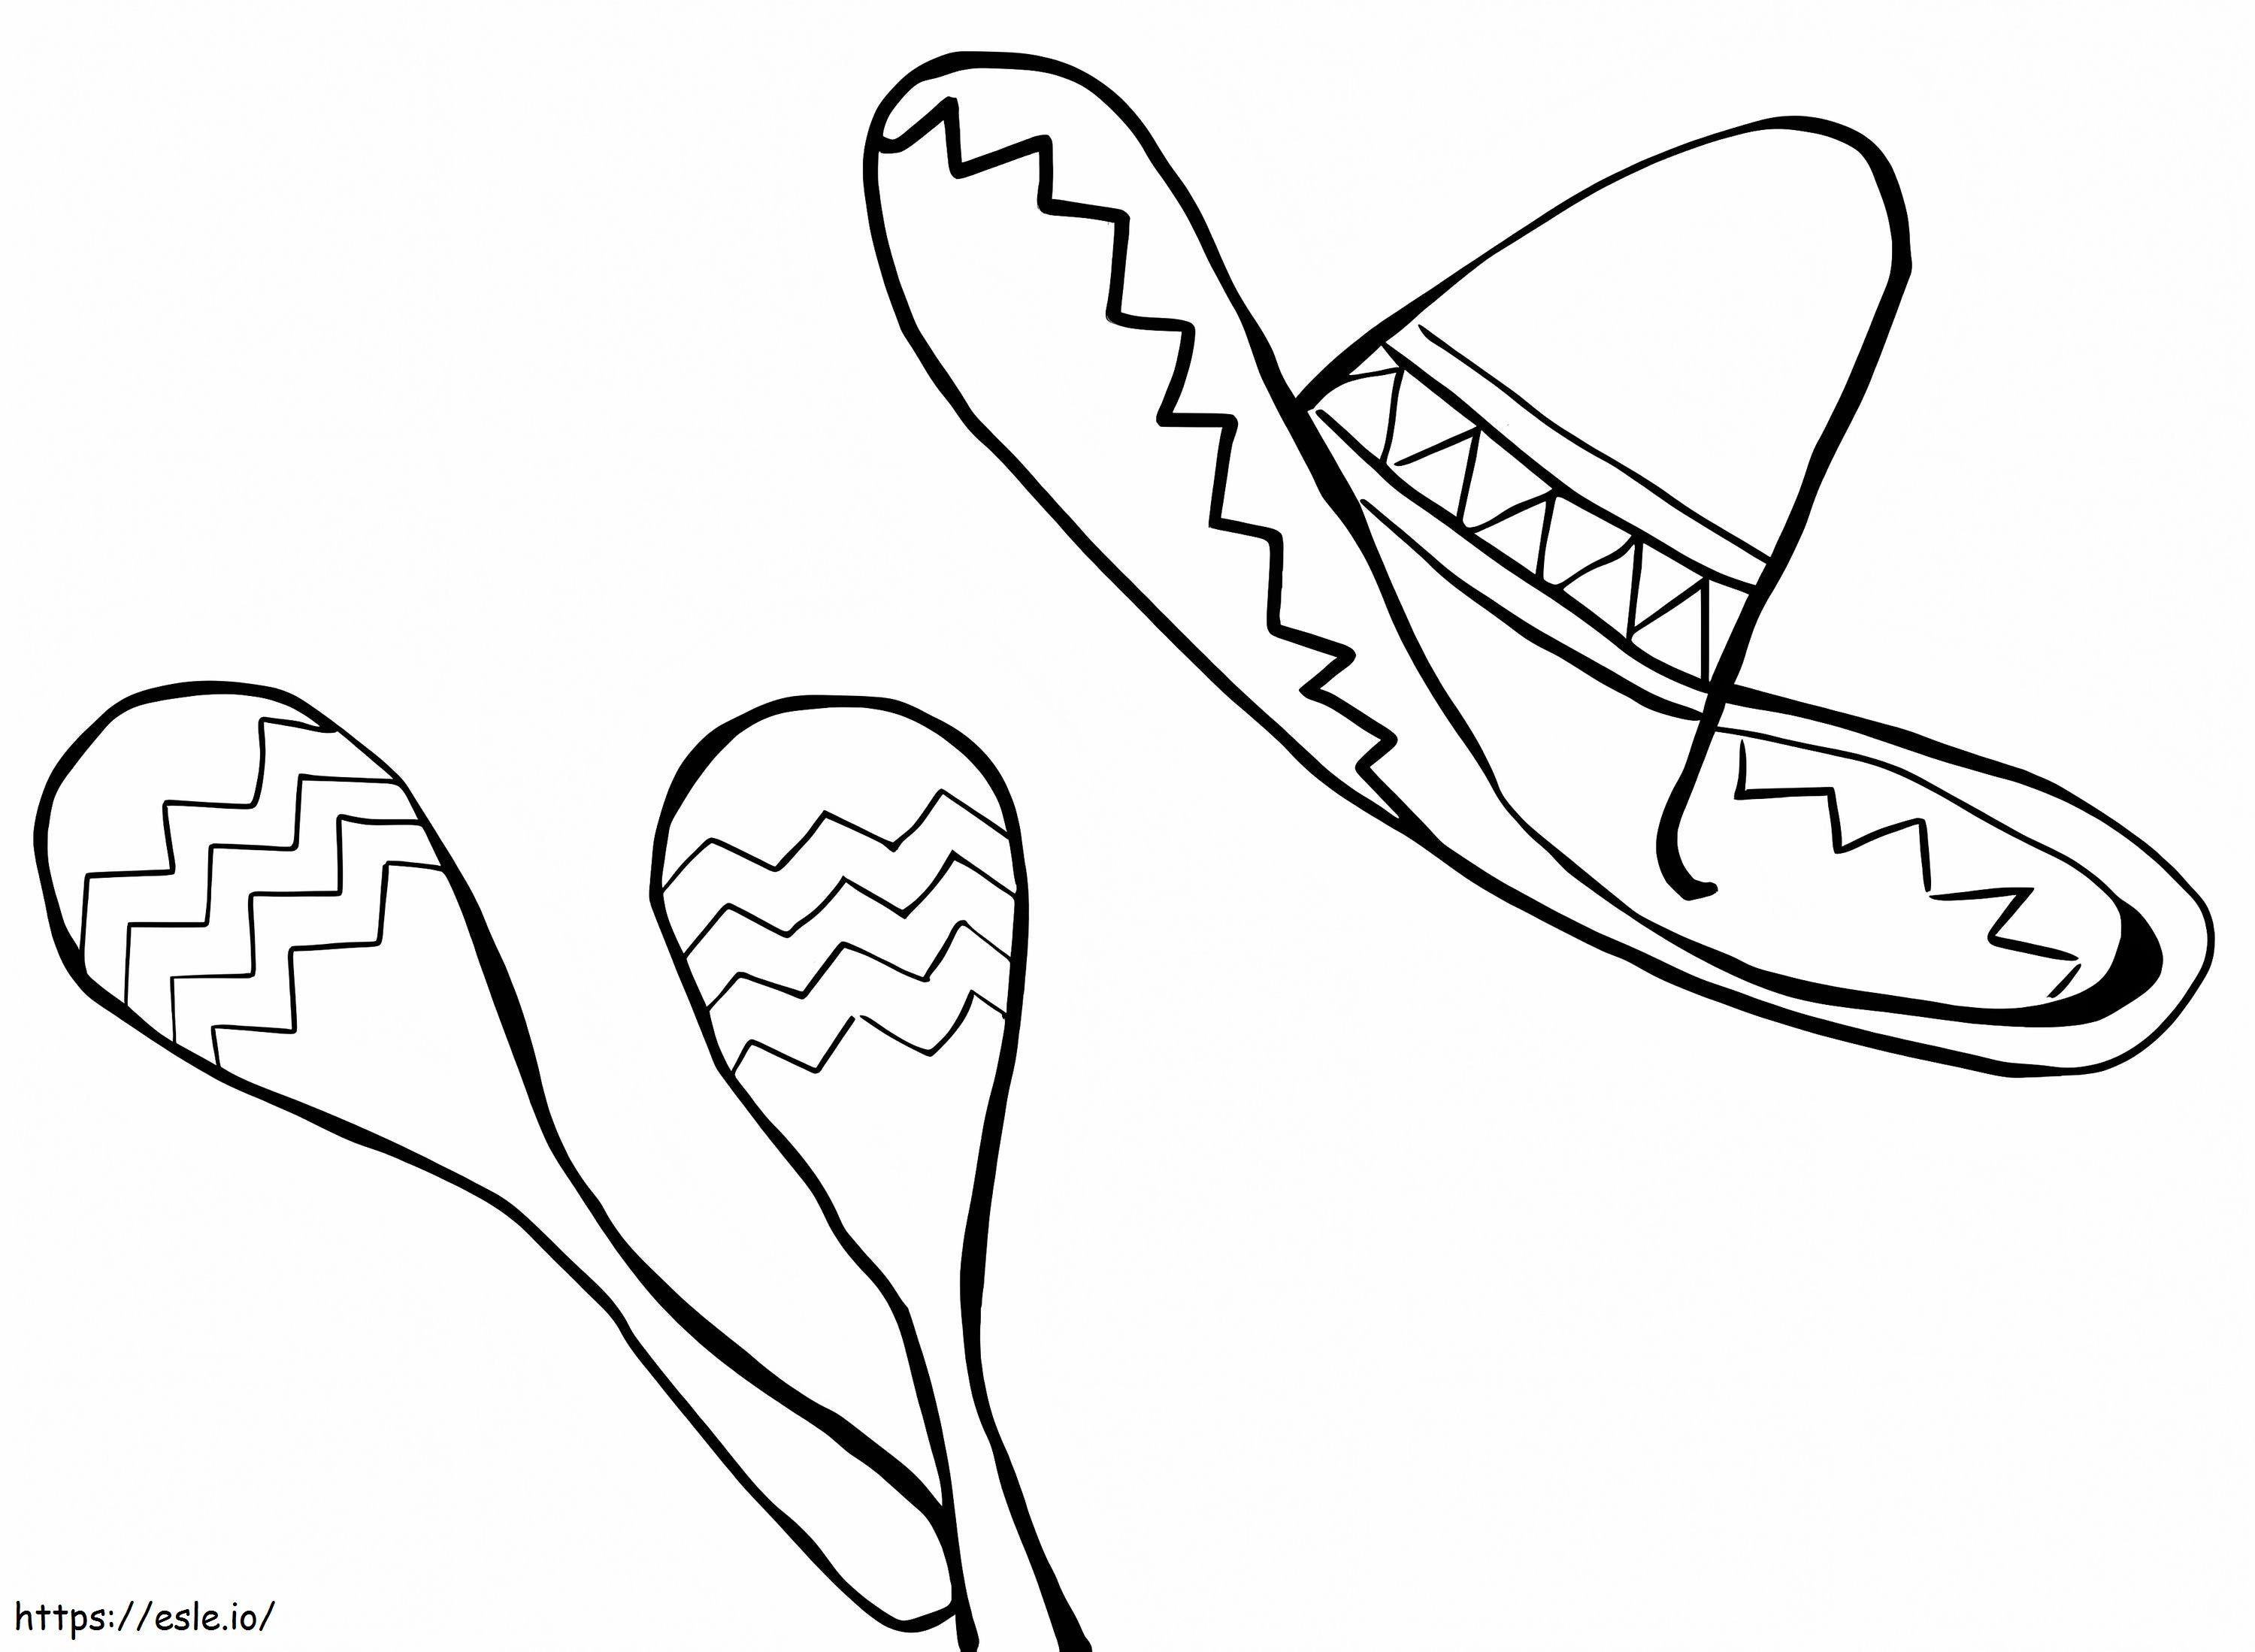 Maracas e cappello messicano da colorare